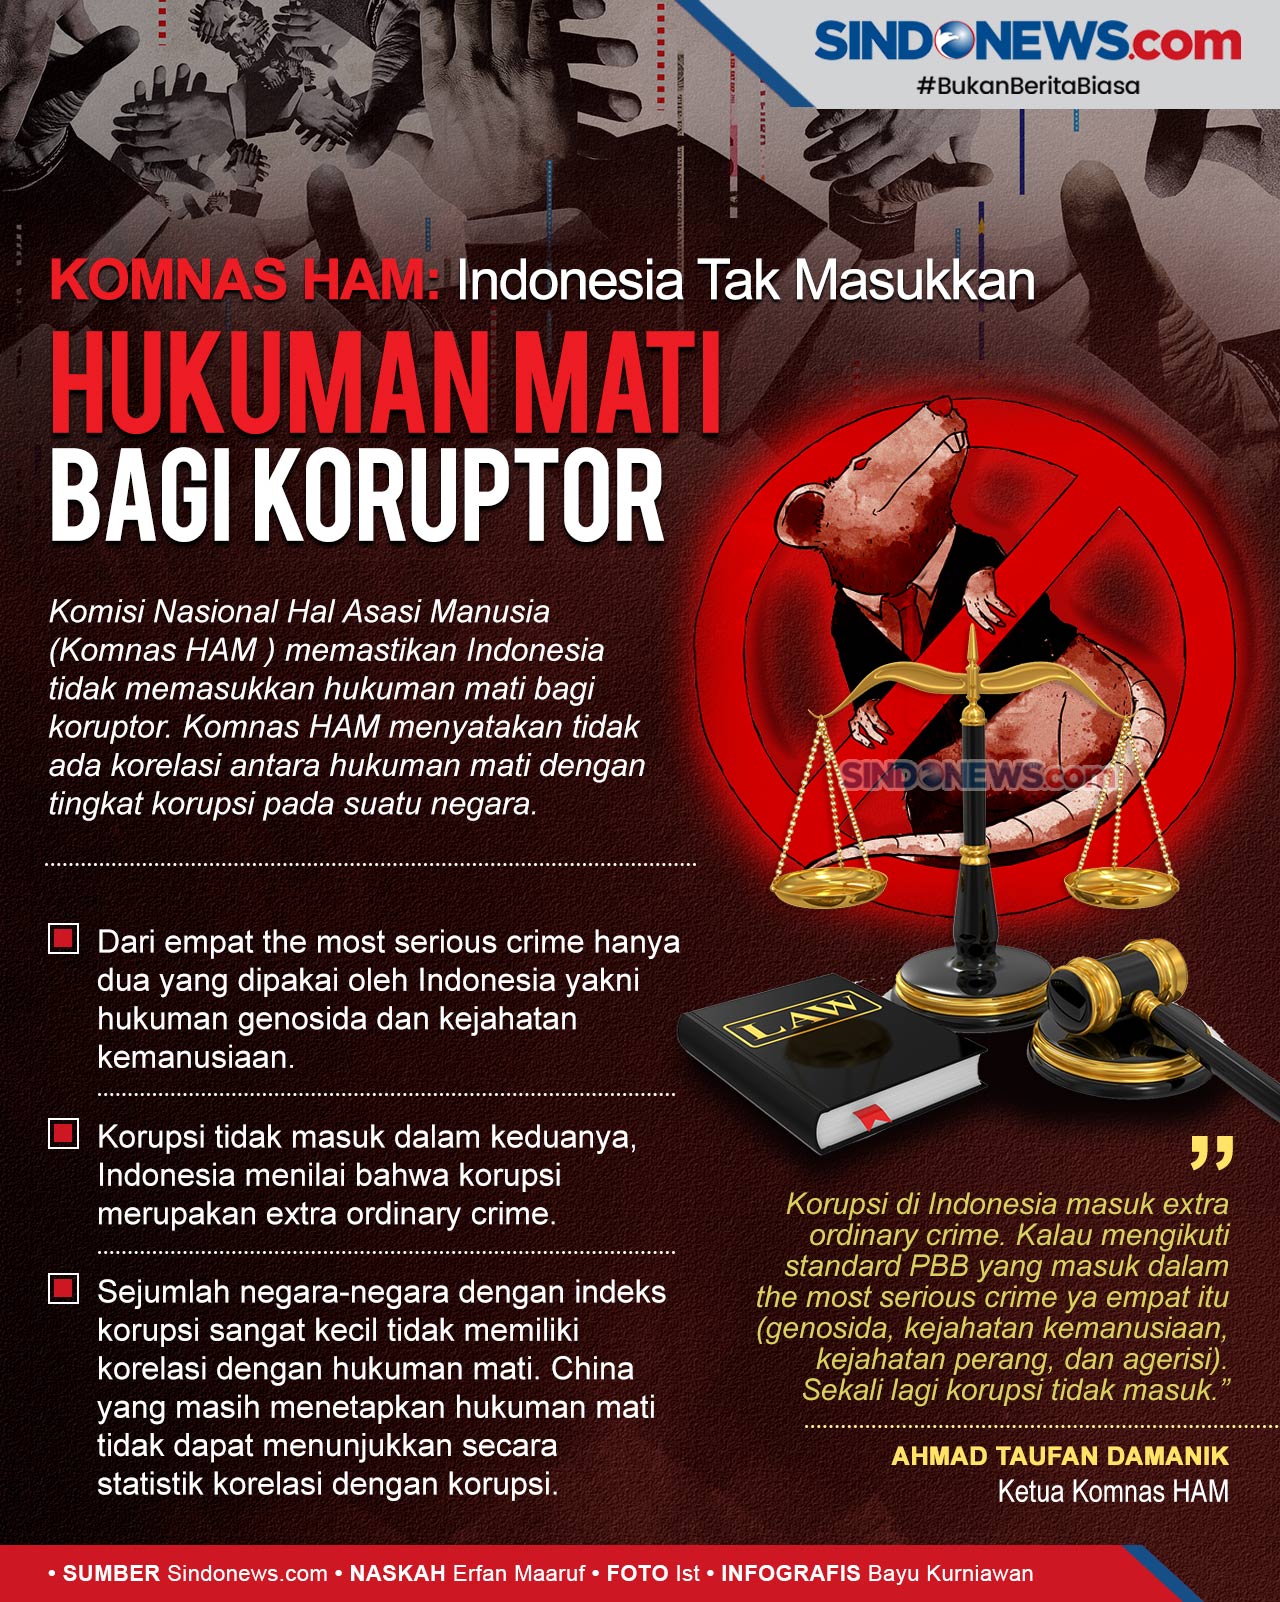 SINDOgrafis: Indonesia Tidak Masukkan Hukuman Mati bagi Koruptor